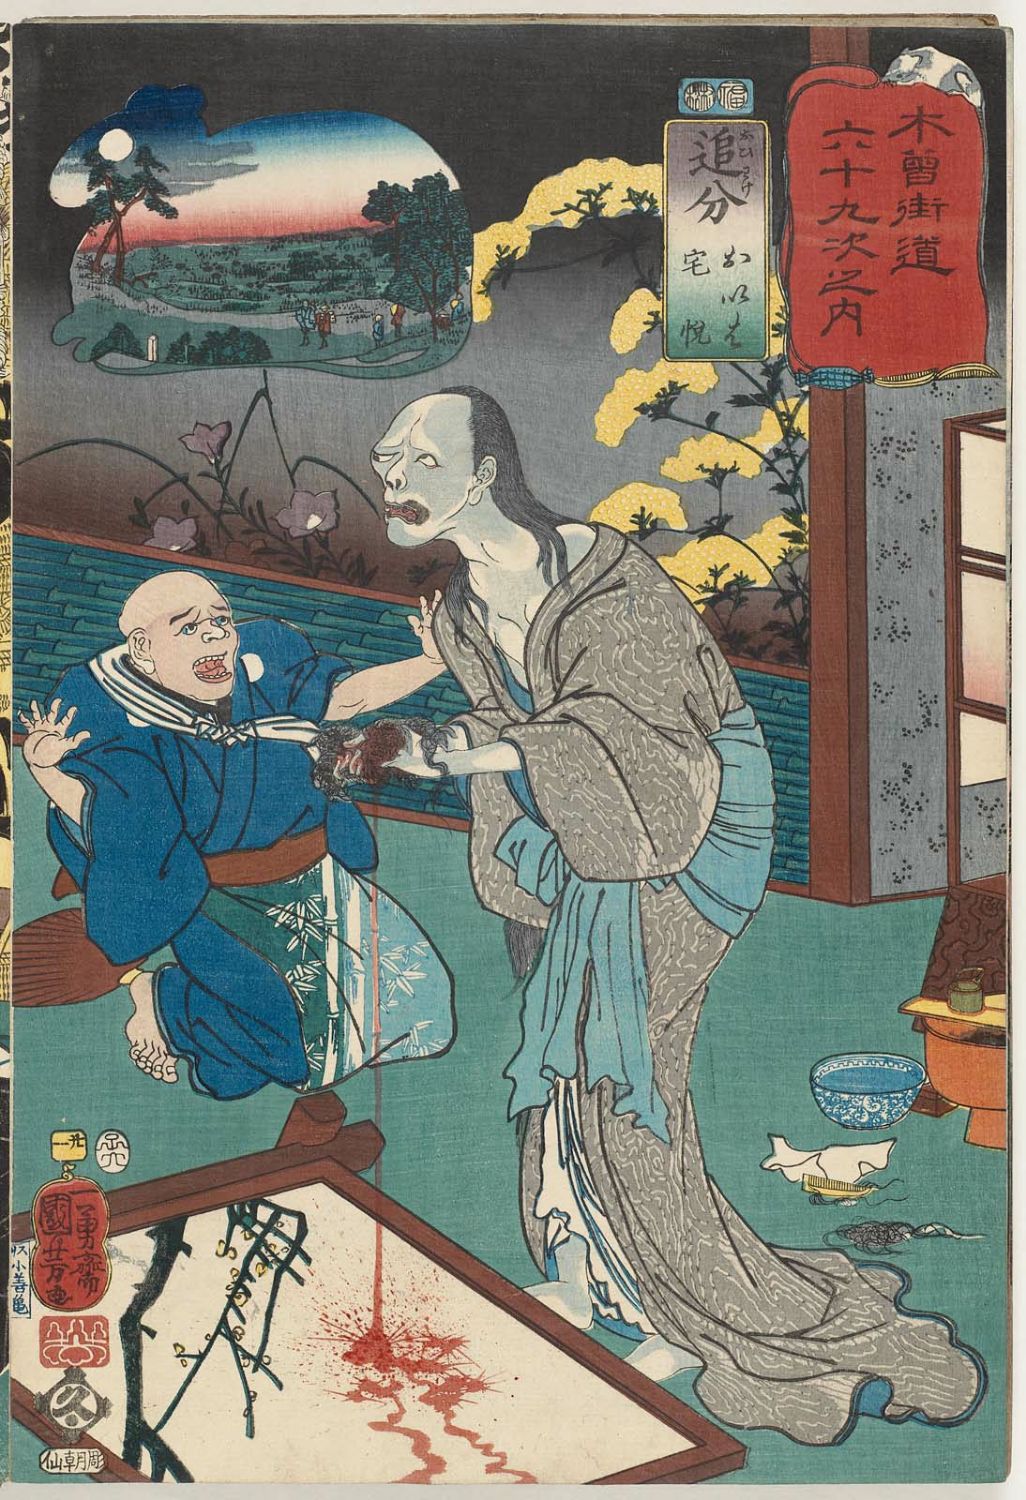 Utagawa Kuniyoshi: 「木曾街道六十九次之内」「廿一」「追分おいは宅 